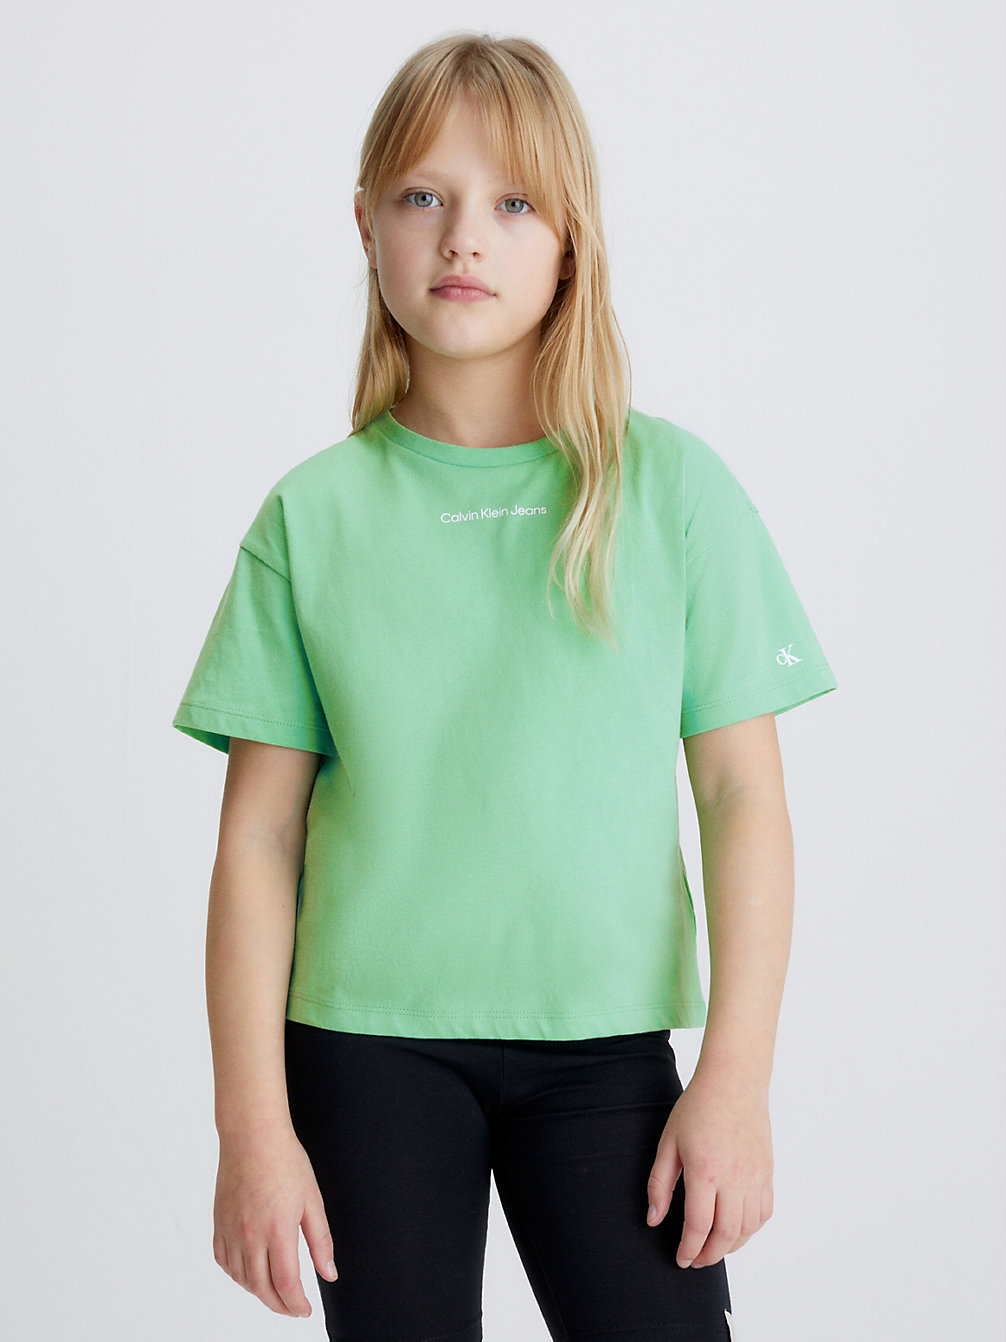 NEPTUNES WAVE > Pudełkowy T-Shirt Z Bawełny Organicznej > undefined girls - Calvin Klein